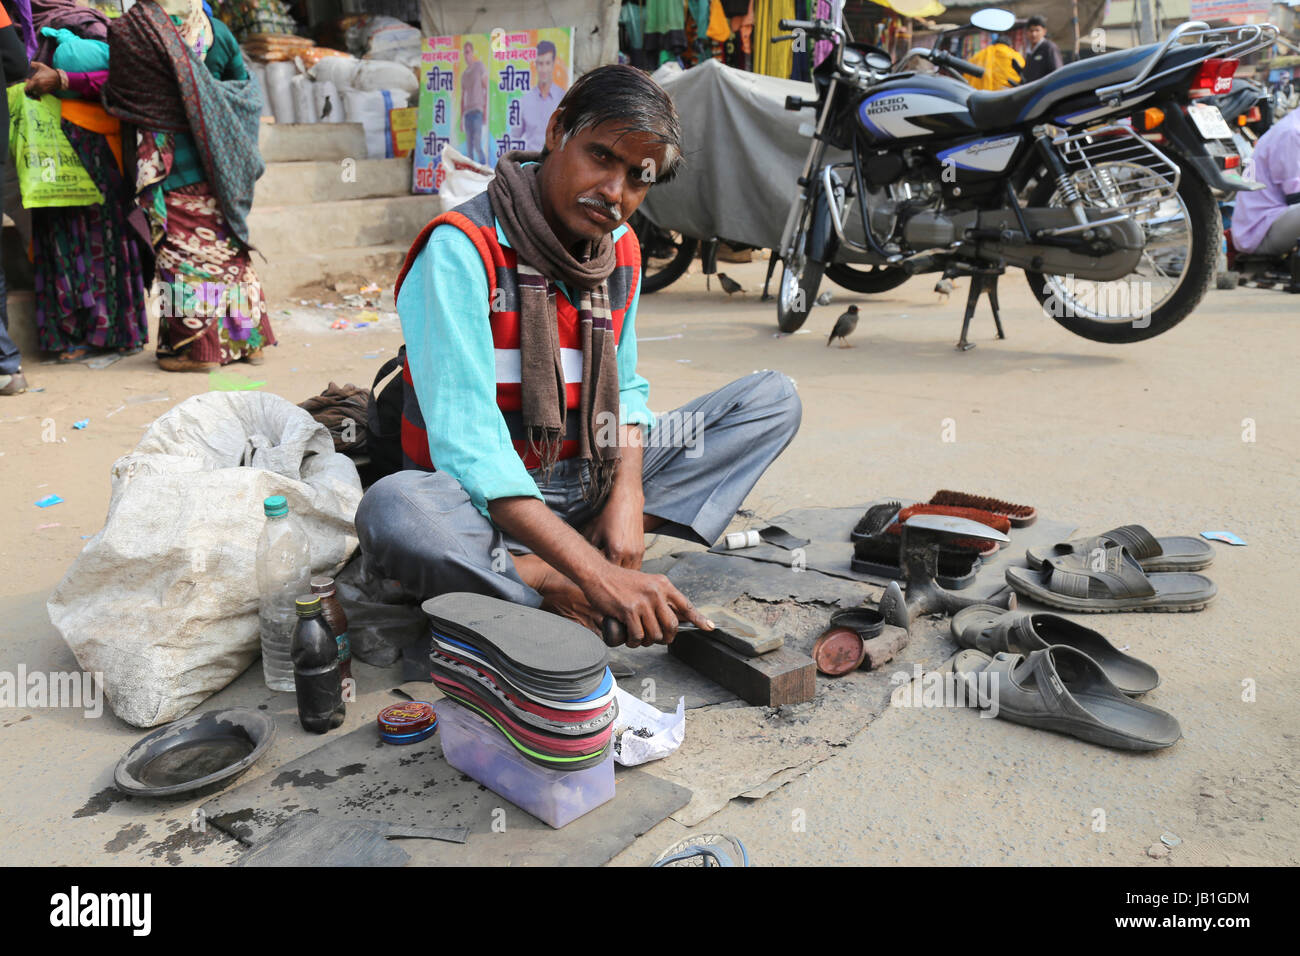 Street Scene, älterer Mensch arbeiten als Schuster auf der Straße, Dausa, Rajasthan, Indien Stockfoto